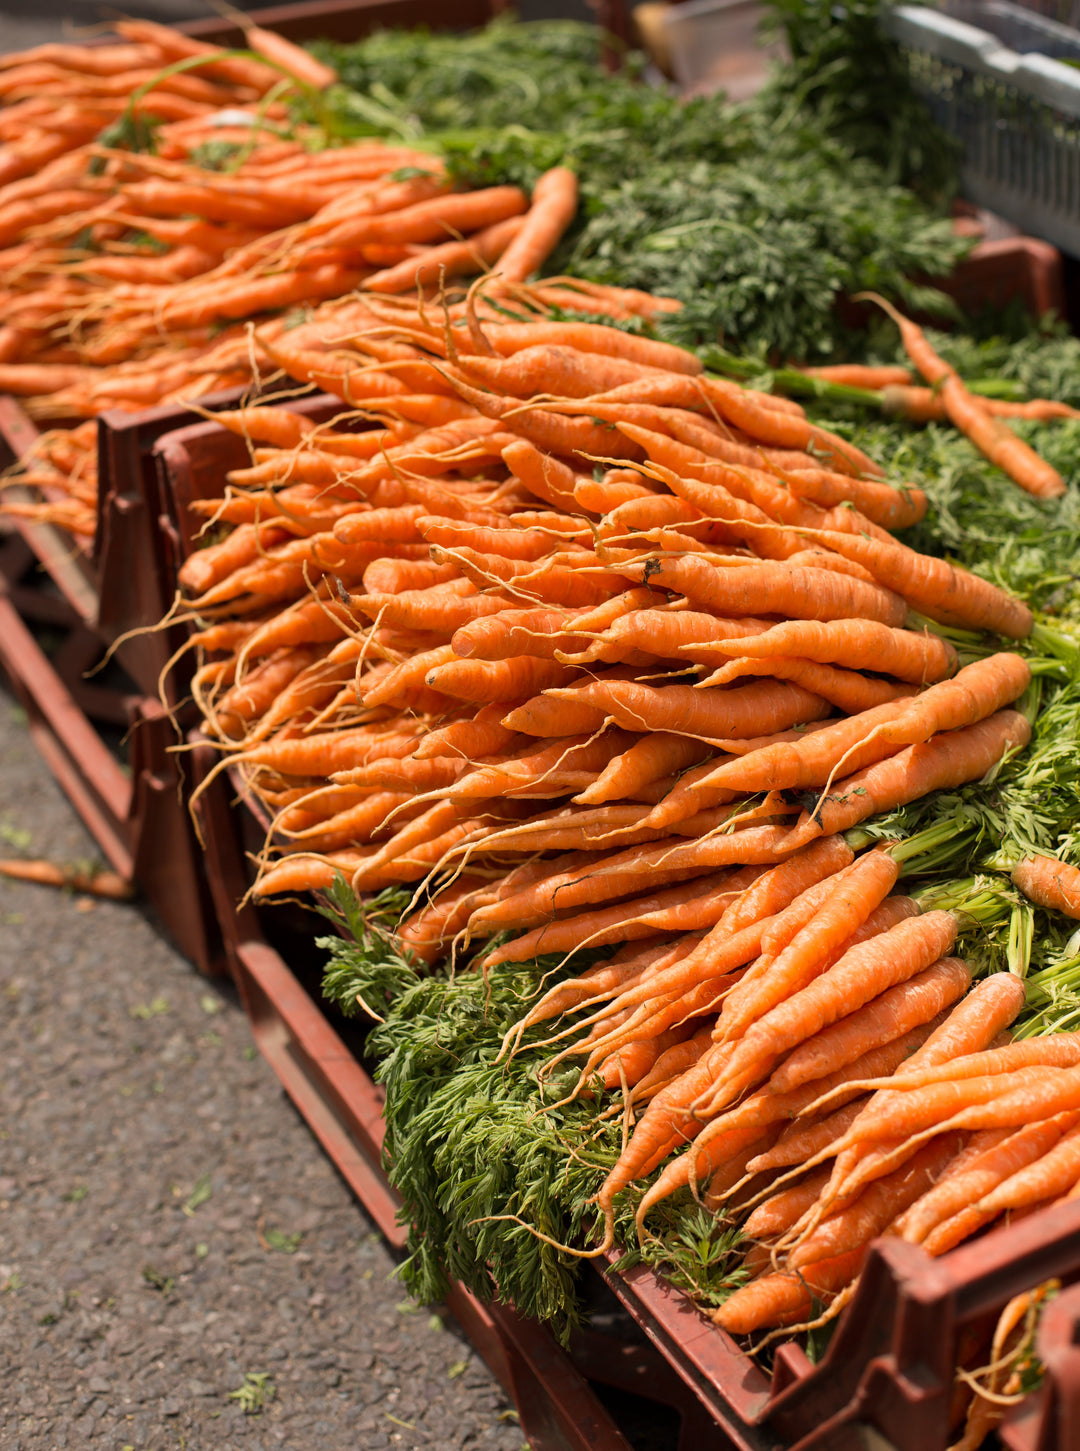 Carrots - Cherries & Carrot Tops